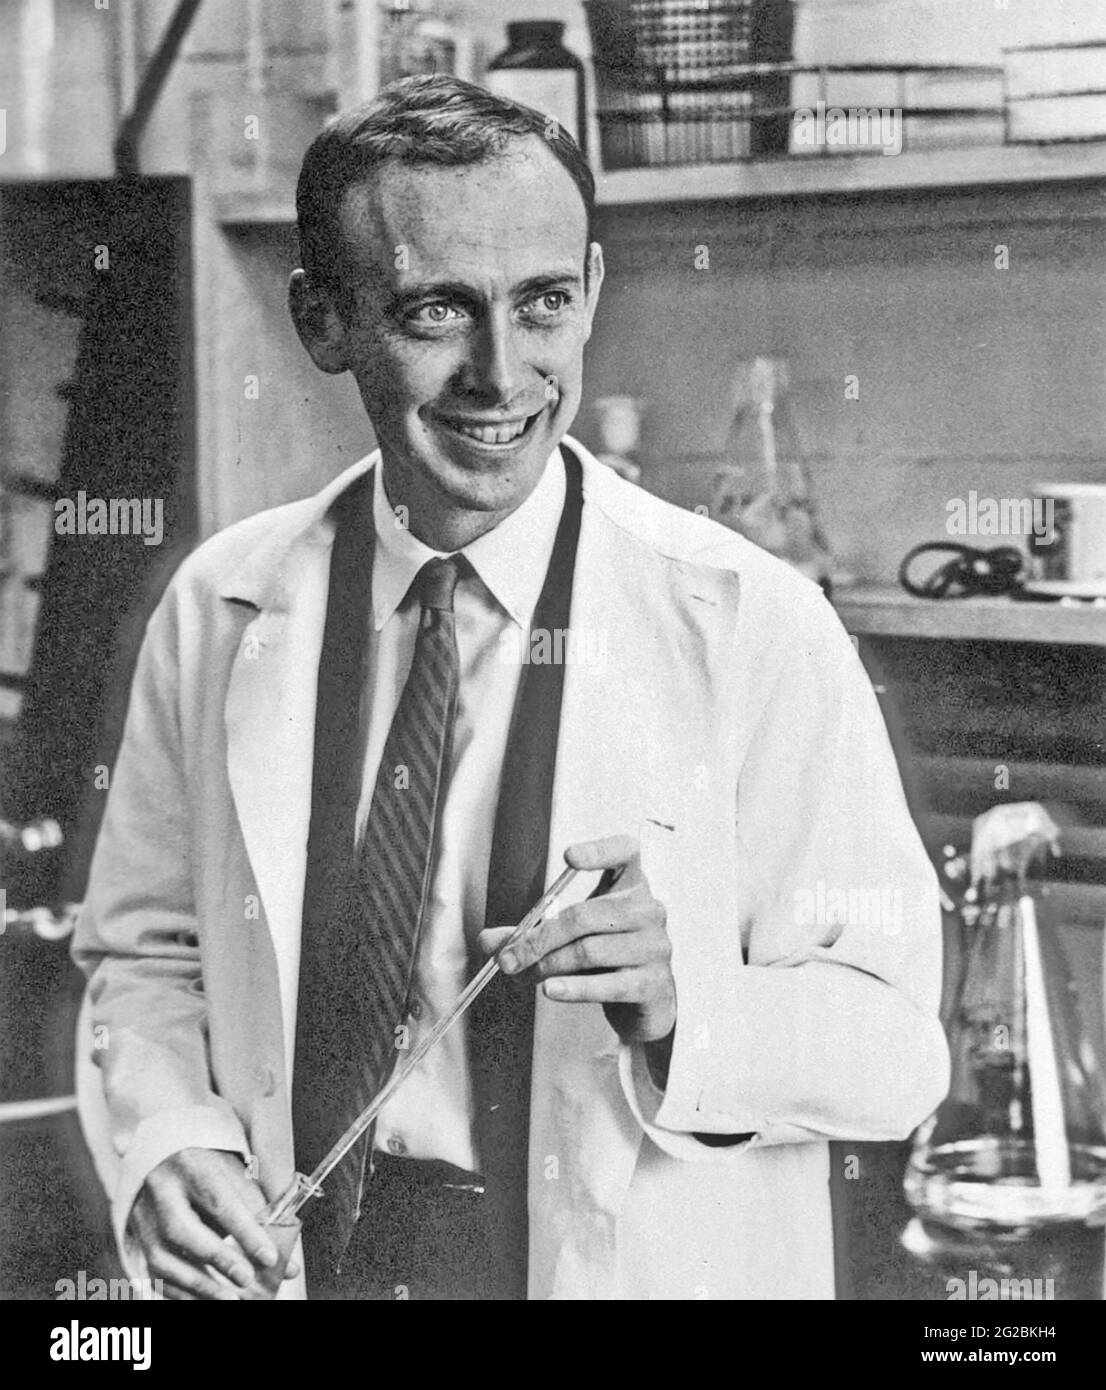 JAMES WATSON biologo molecolare americano e genetista co-autore con Francis Crick il lavoro che propone la struttura a doppia elica della molecola di DNA. Foto circa 1968. Foto Stock